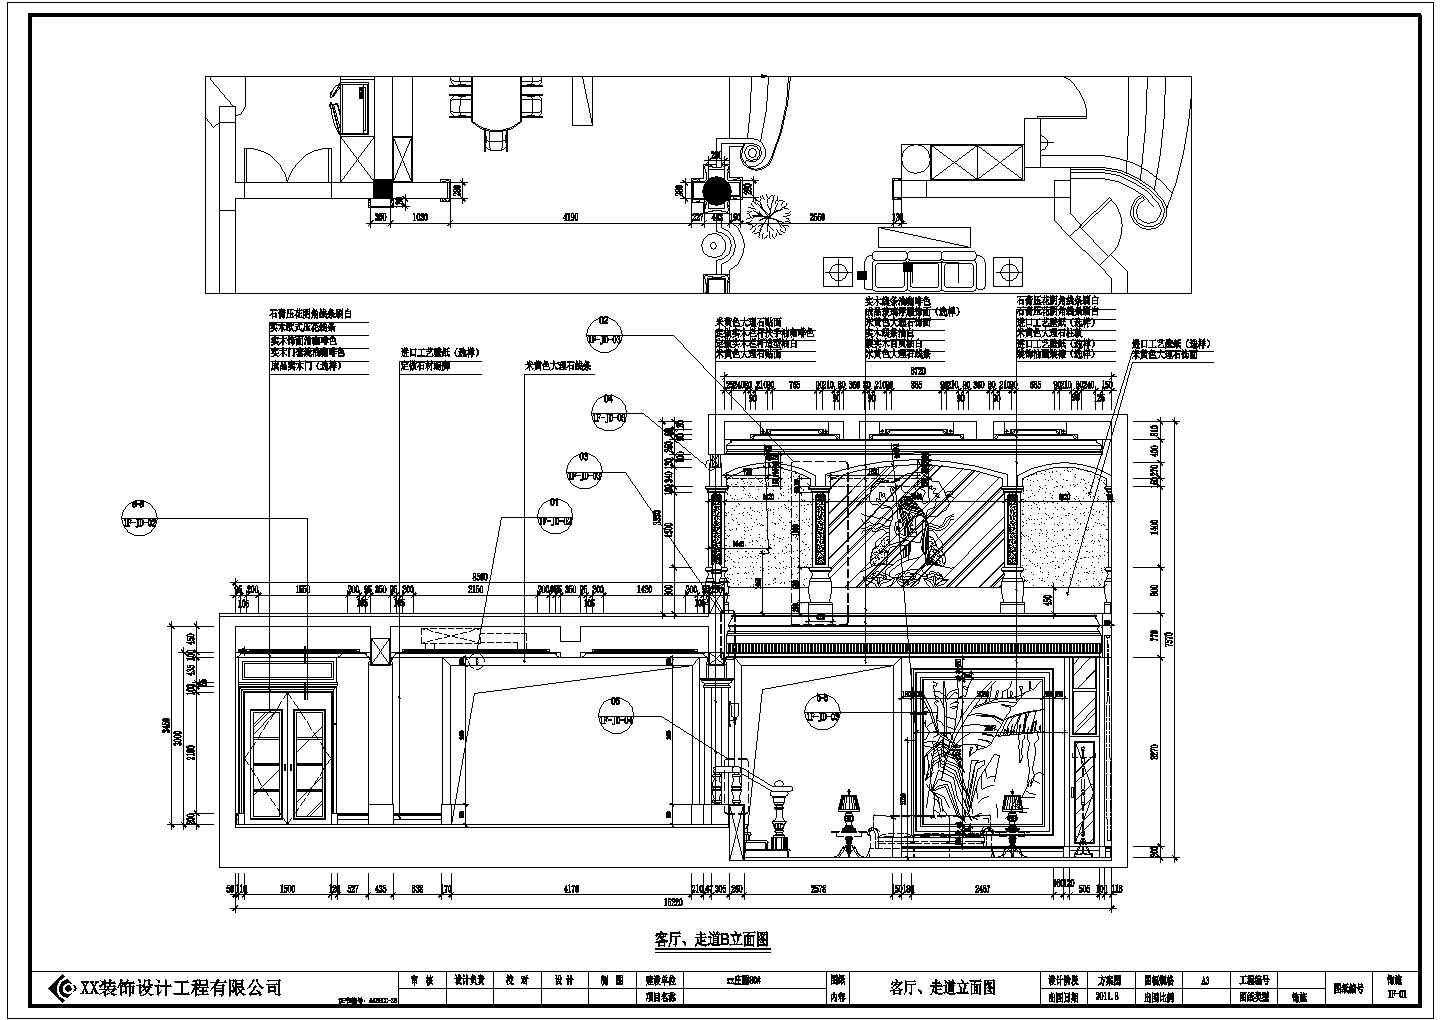 一套超详细三层独栋别墅有地下室整体装修施工图（含电路图）